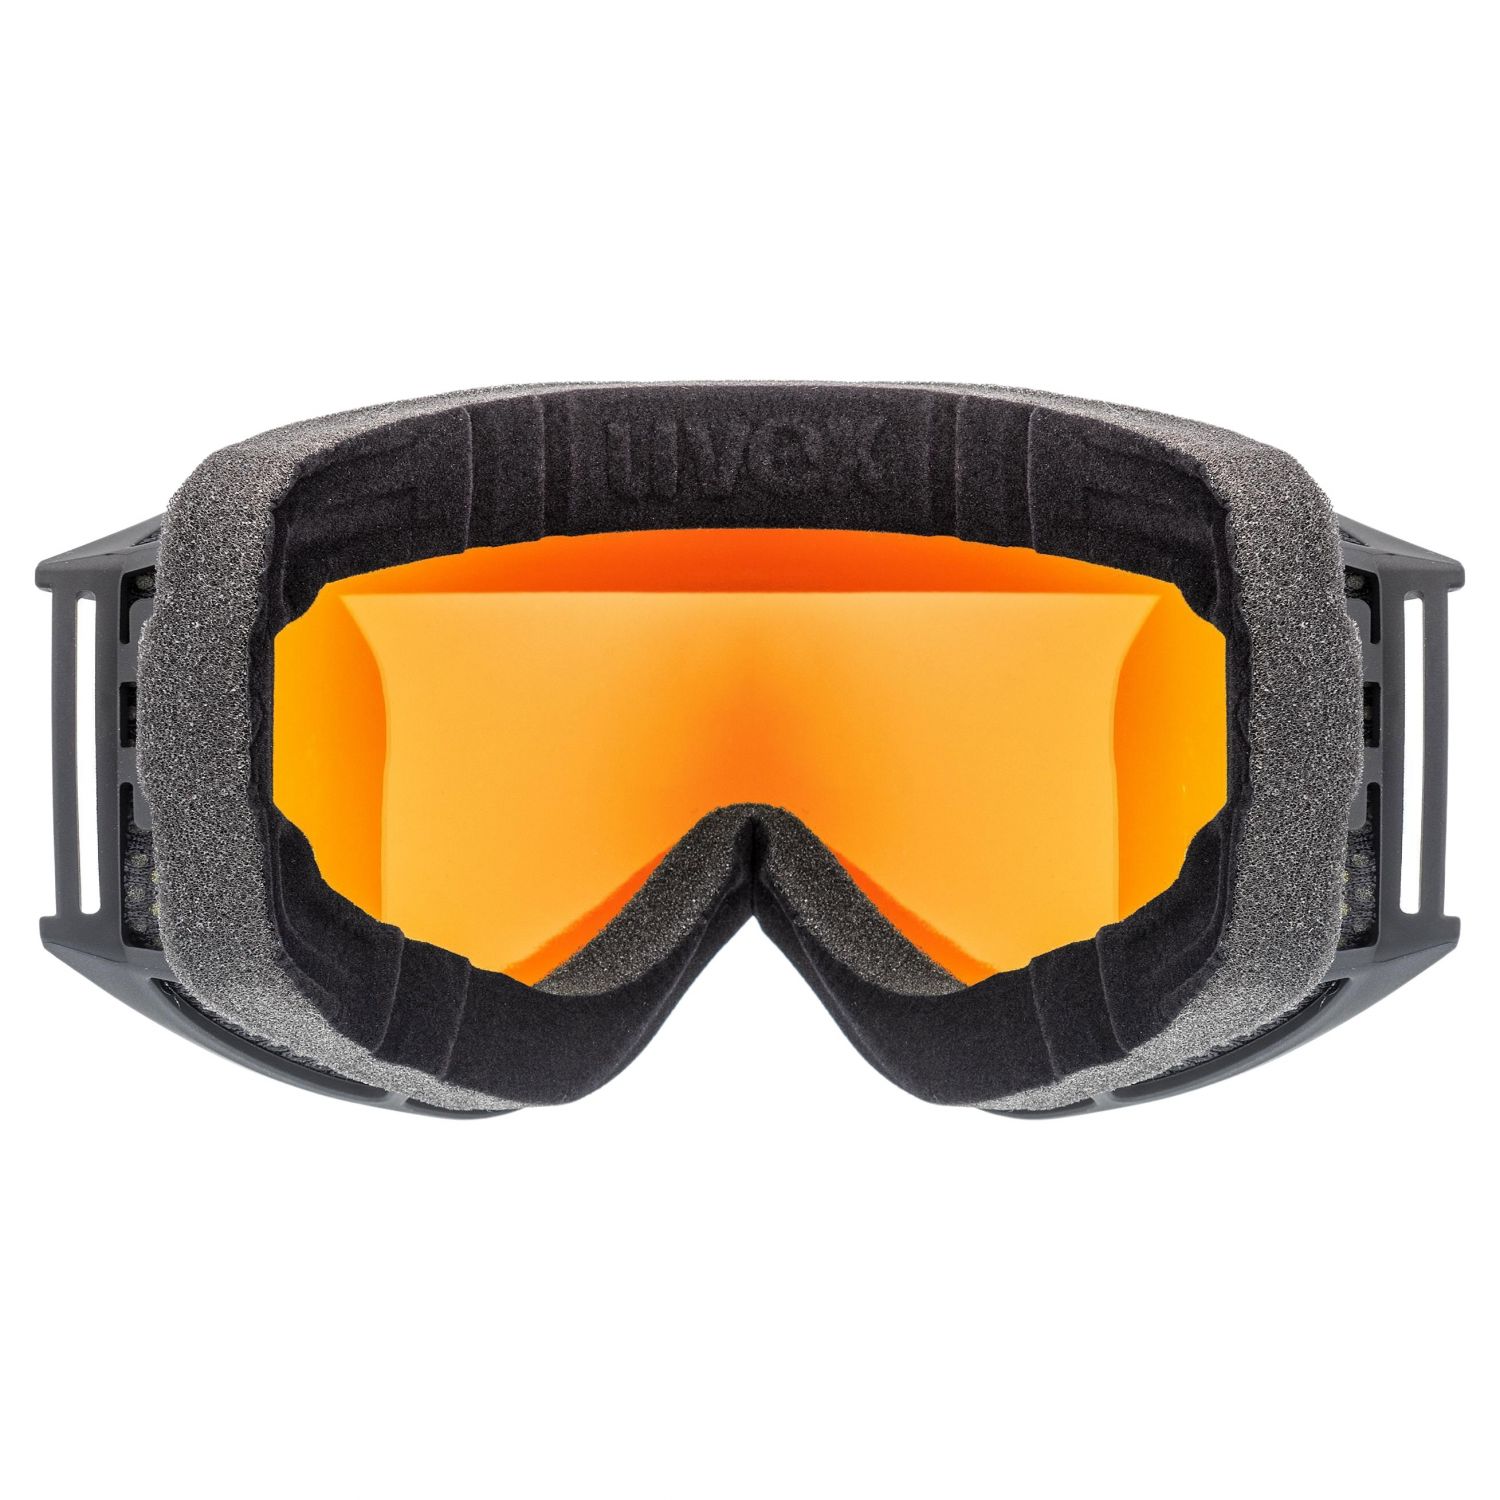 Uvex g.gl. 3000 CV, ski bril, zwart/oranje